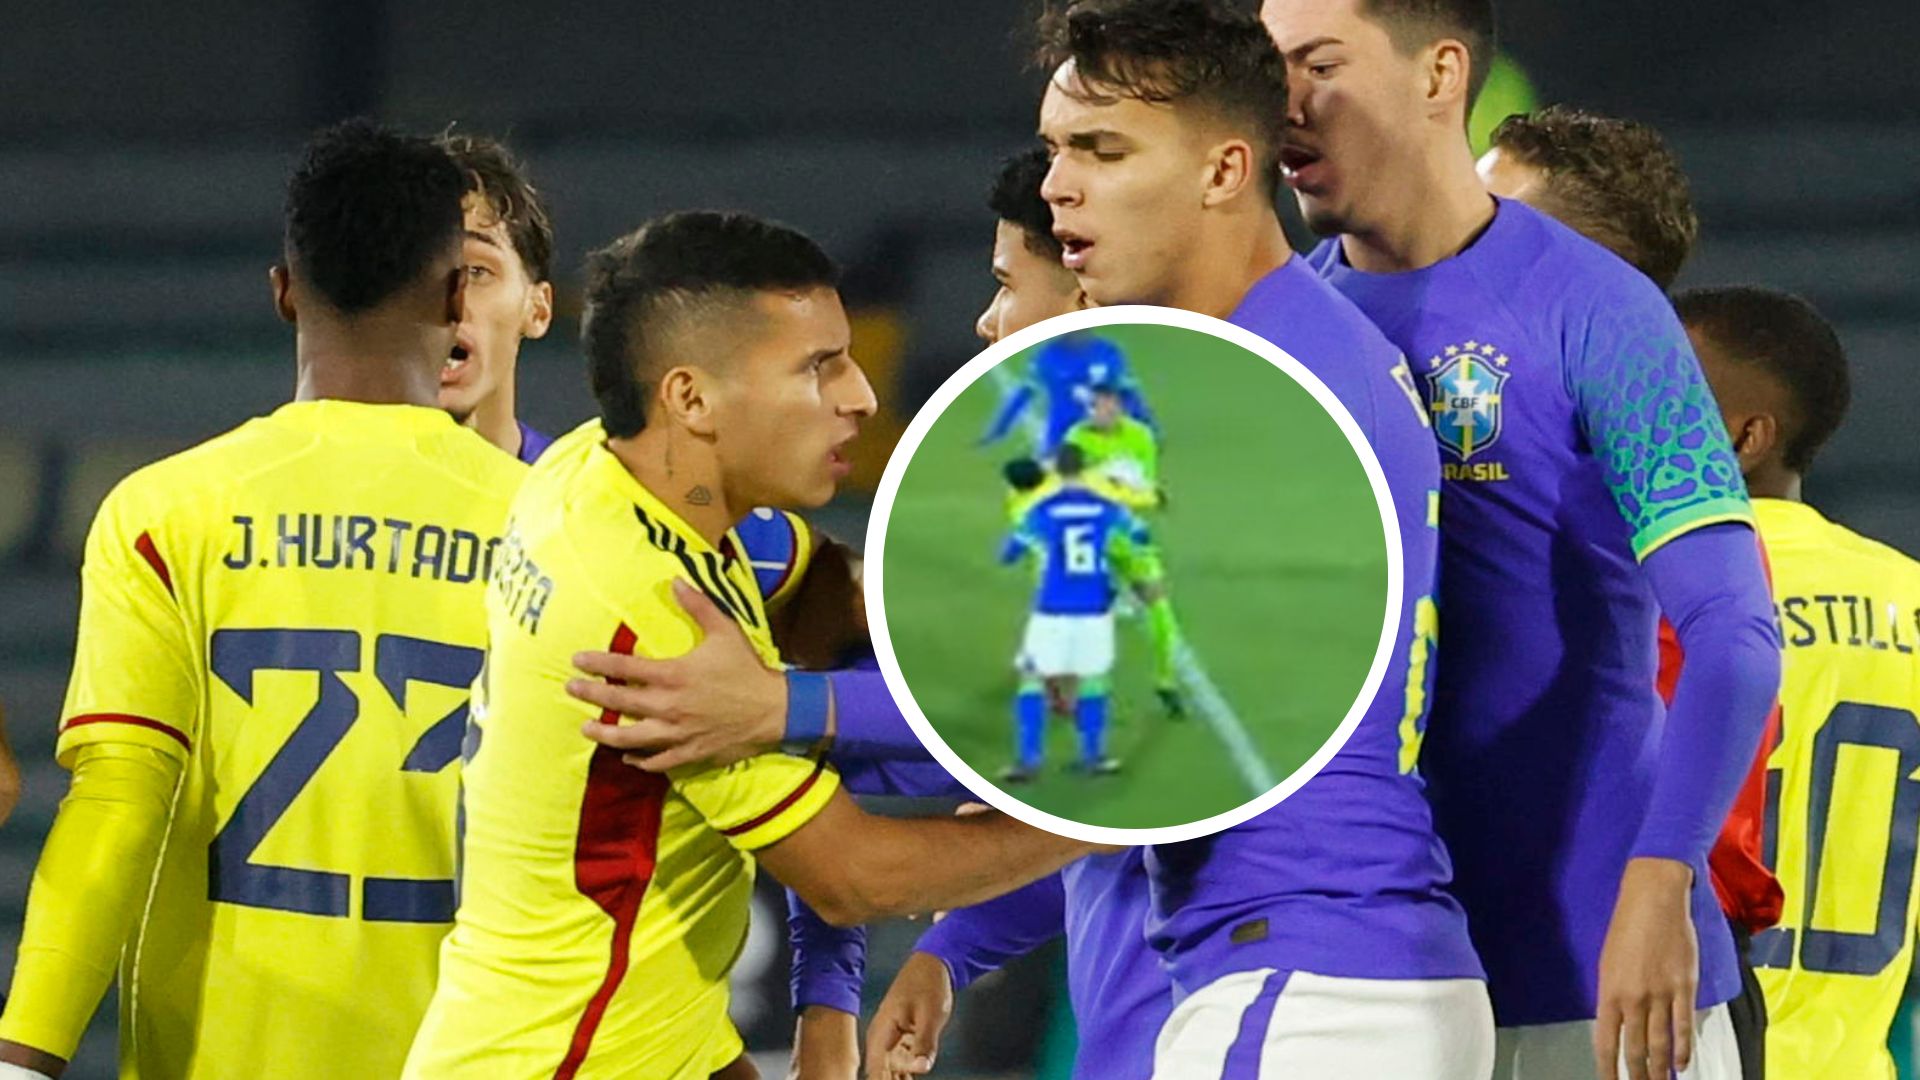 Fotos de Gustavo Puerta y falta contra Alexis Castillo, en nota de Selección Colombia Sub-20 sufrió contra Brasil dura falta y grave error arbitral